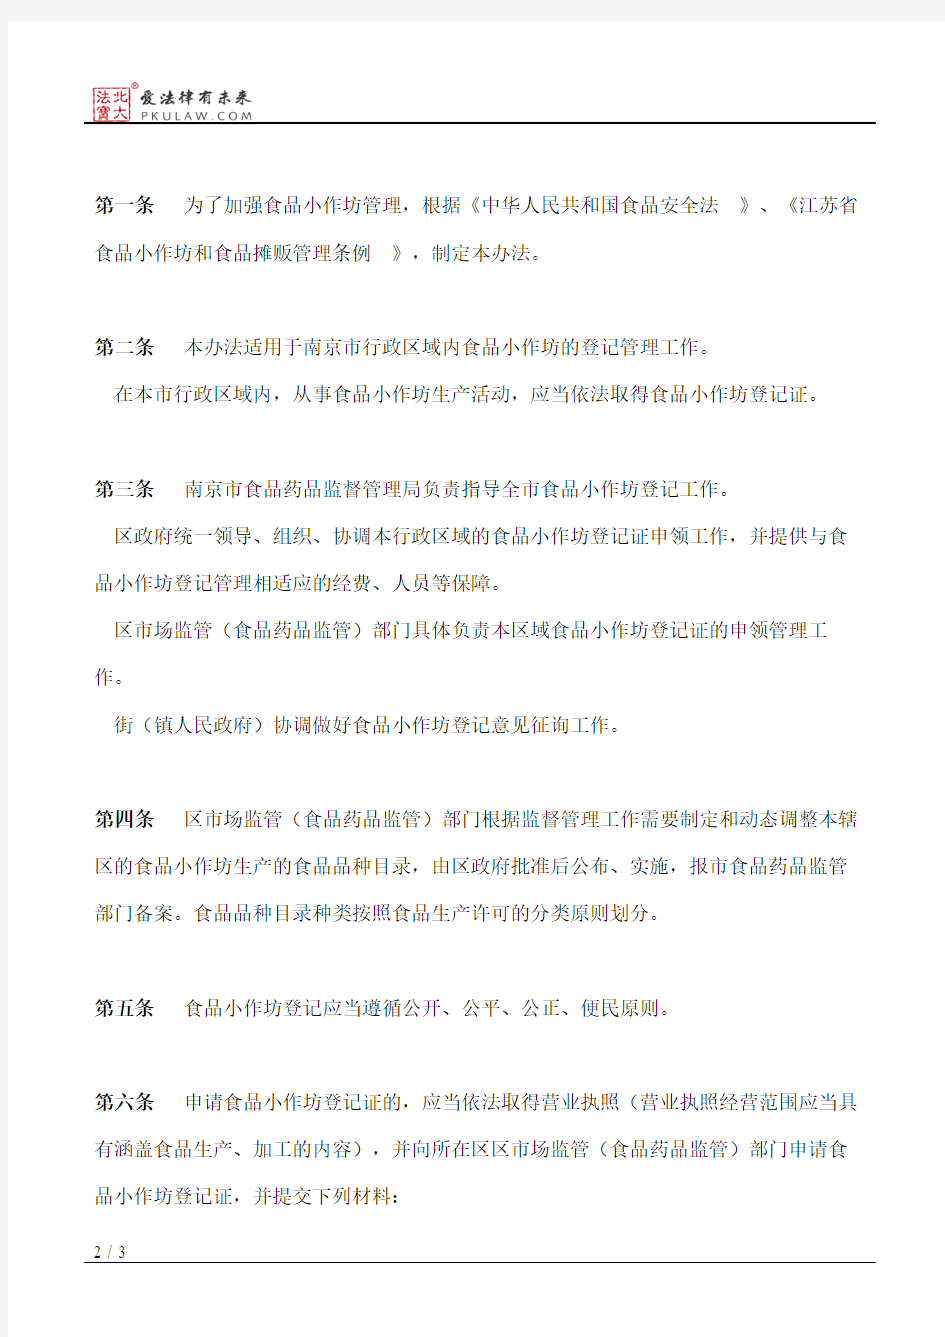 南京市政府关于印发南京市食品小作坊登记证申领管理办法的通知